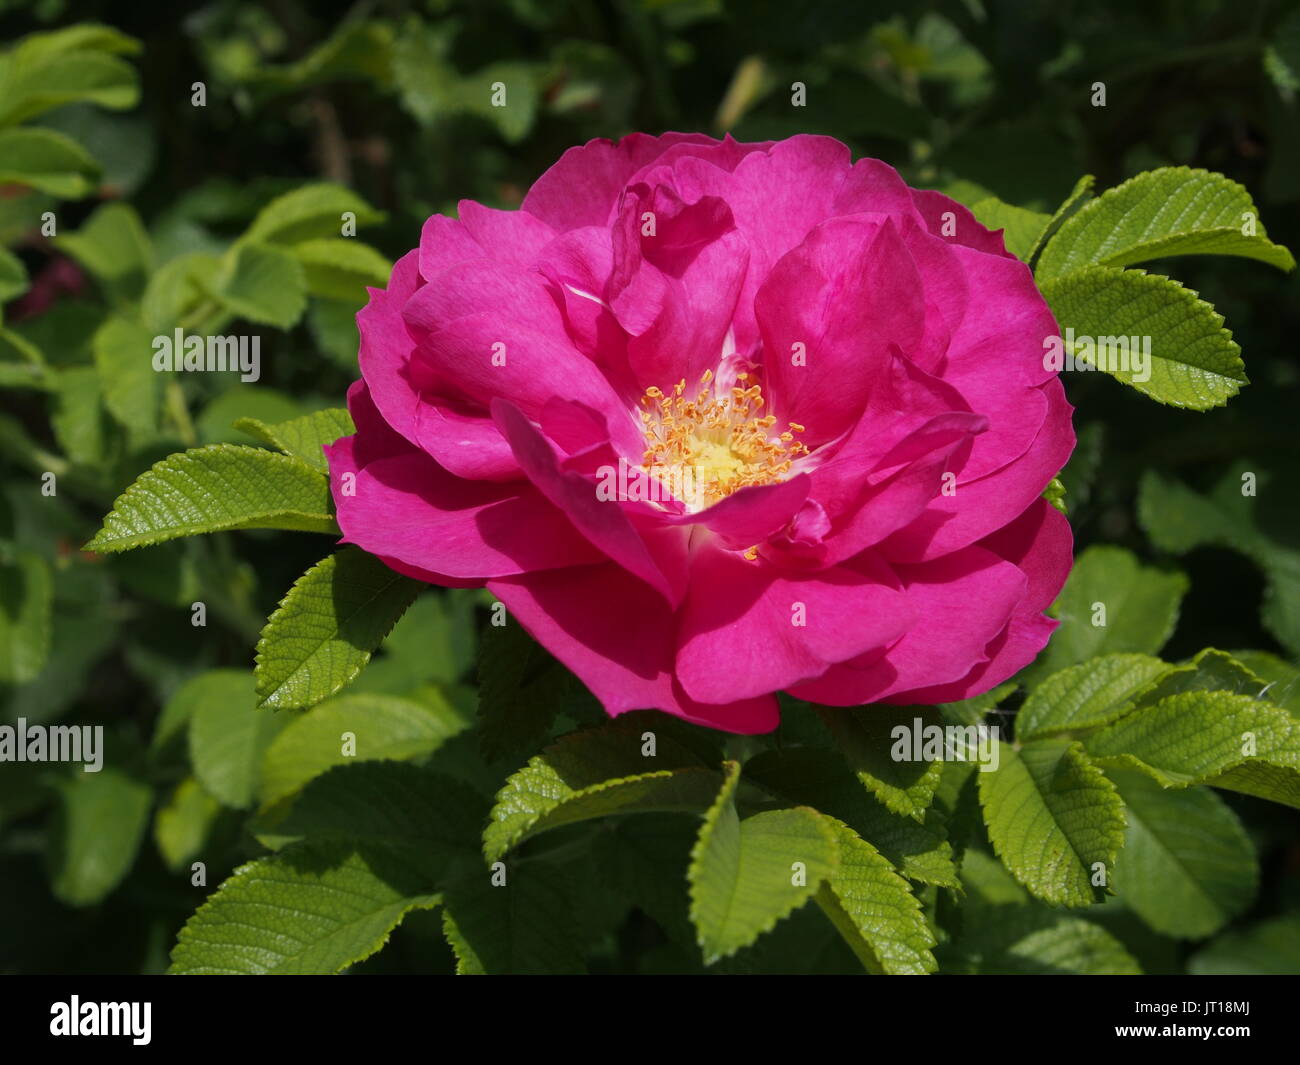 Gros plan d'une rose sauvage (Rosa gallica?) Fleur trouvée dans un jardin de Glebe, Ottawa, Ontario, Canada. Banque D'Images